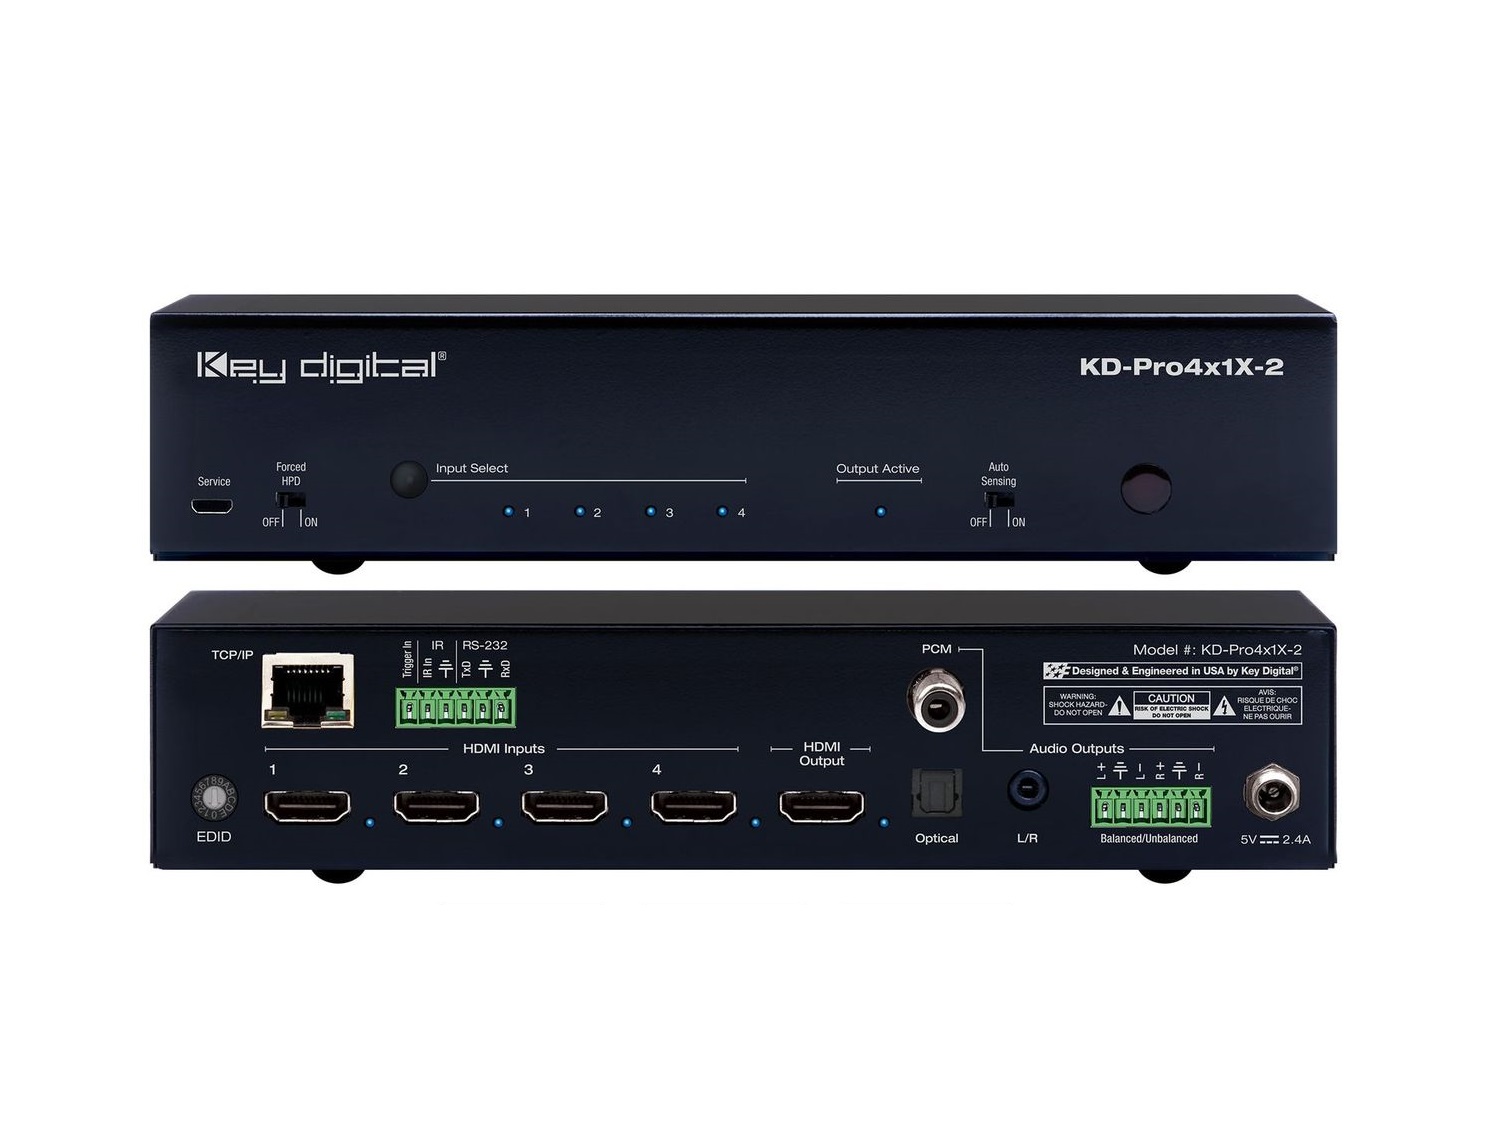 KD-Pro4x1X-2 4 Input Pro Series HDMI Auto Switcher with Web UI by Key Digital